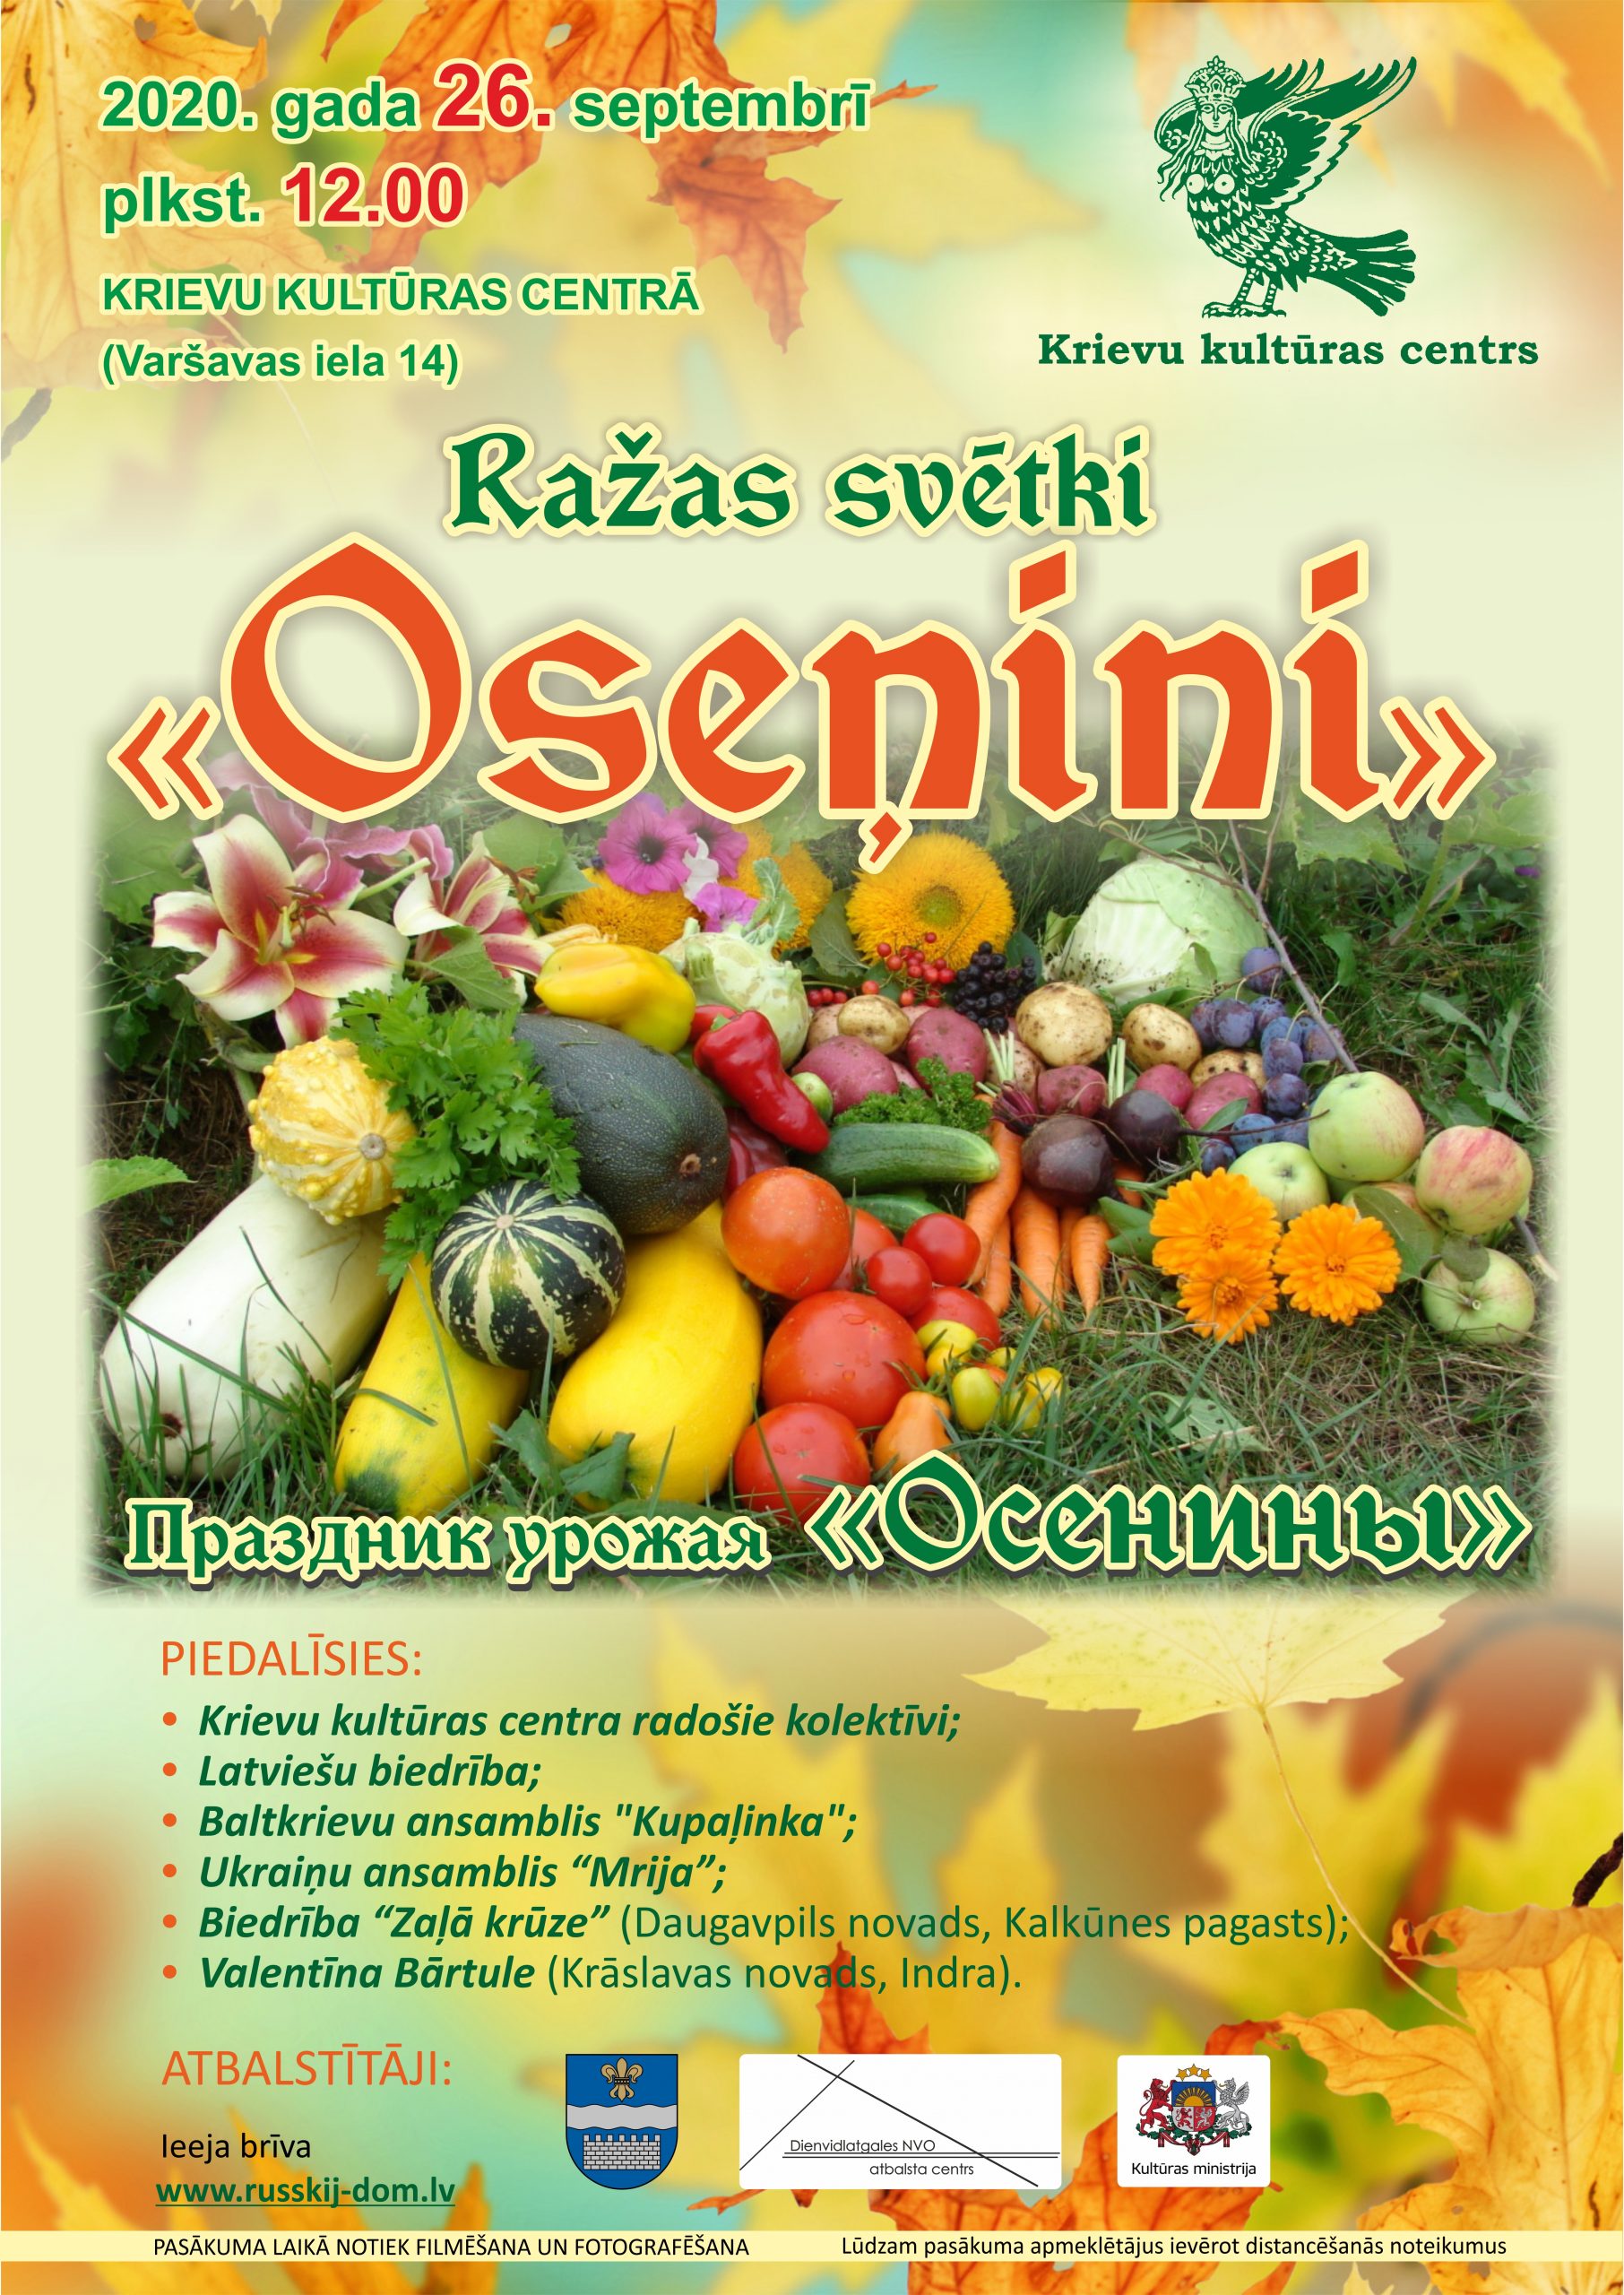 Праздник урожая “Осенины” в Центре русской культуры